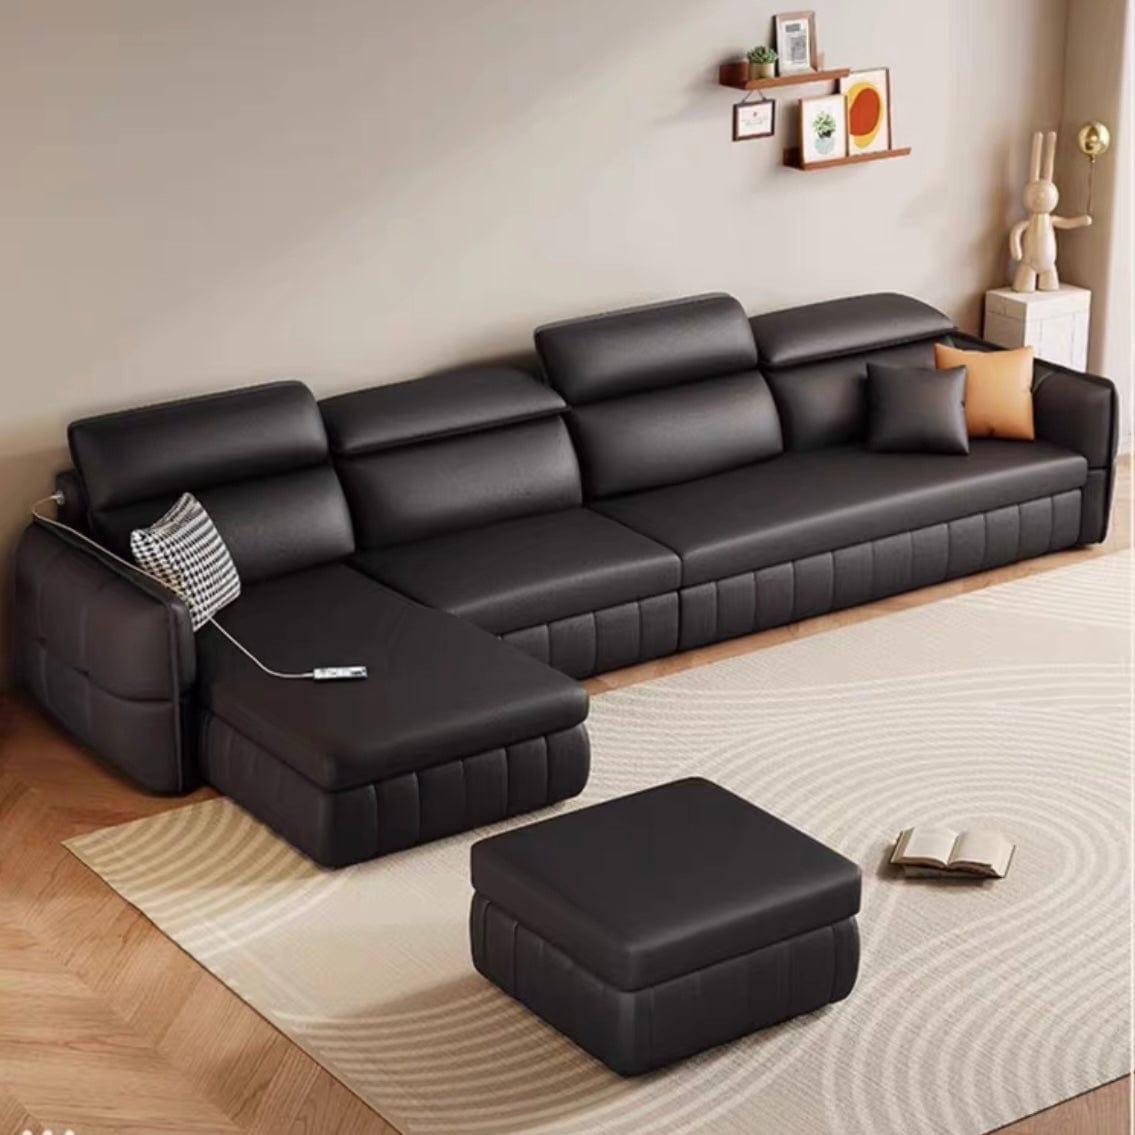 Home Atelier Malcom Sofa Bed